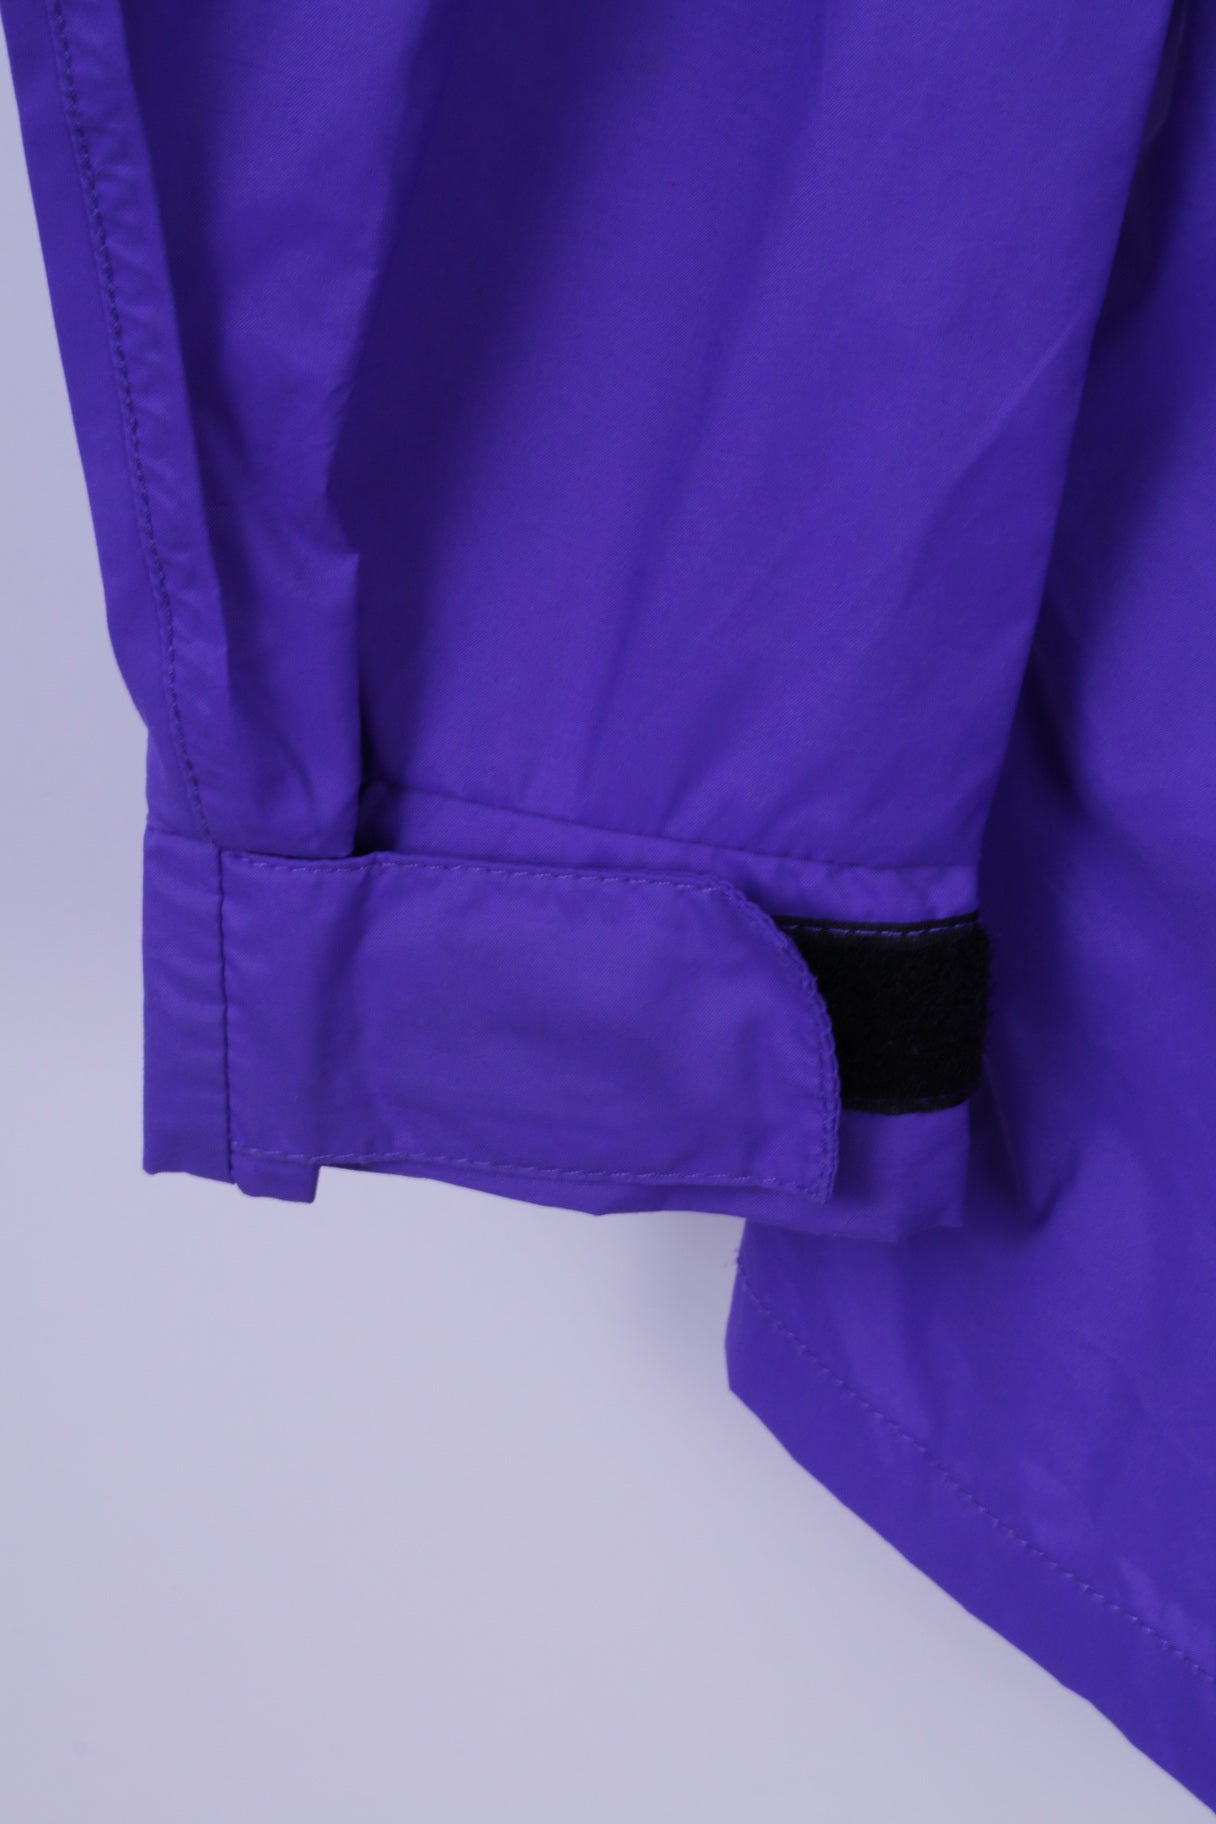 Peter Storm Mens M Rain Jacket Purple Nylon Tactel Zip Up Hooded Outdoor Top